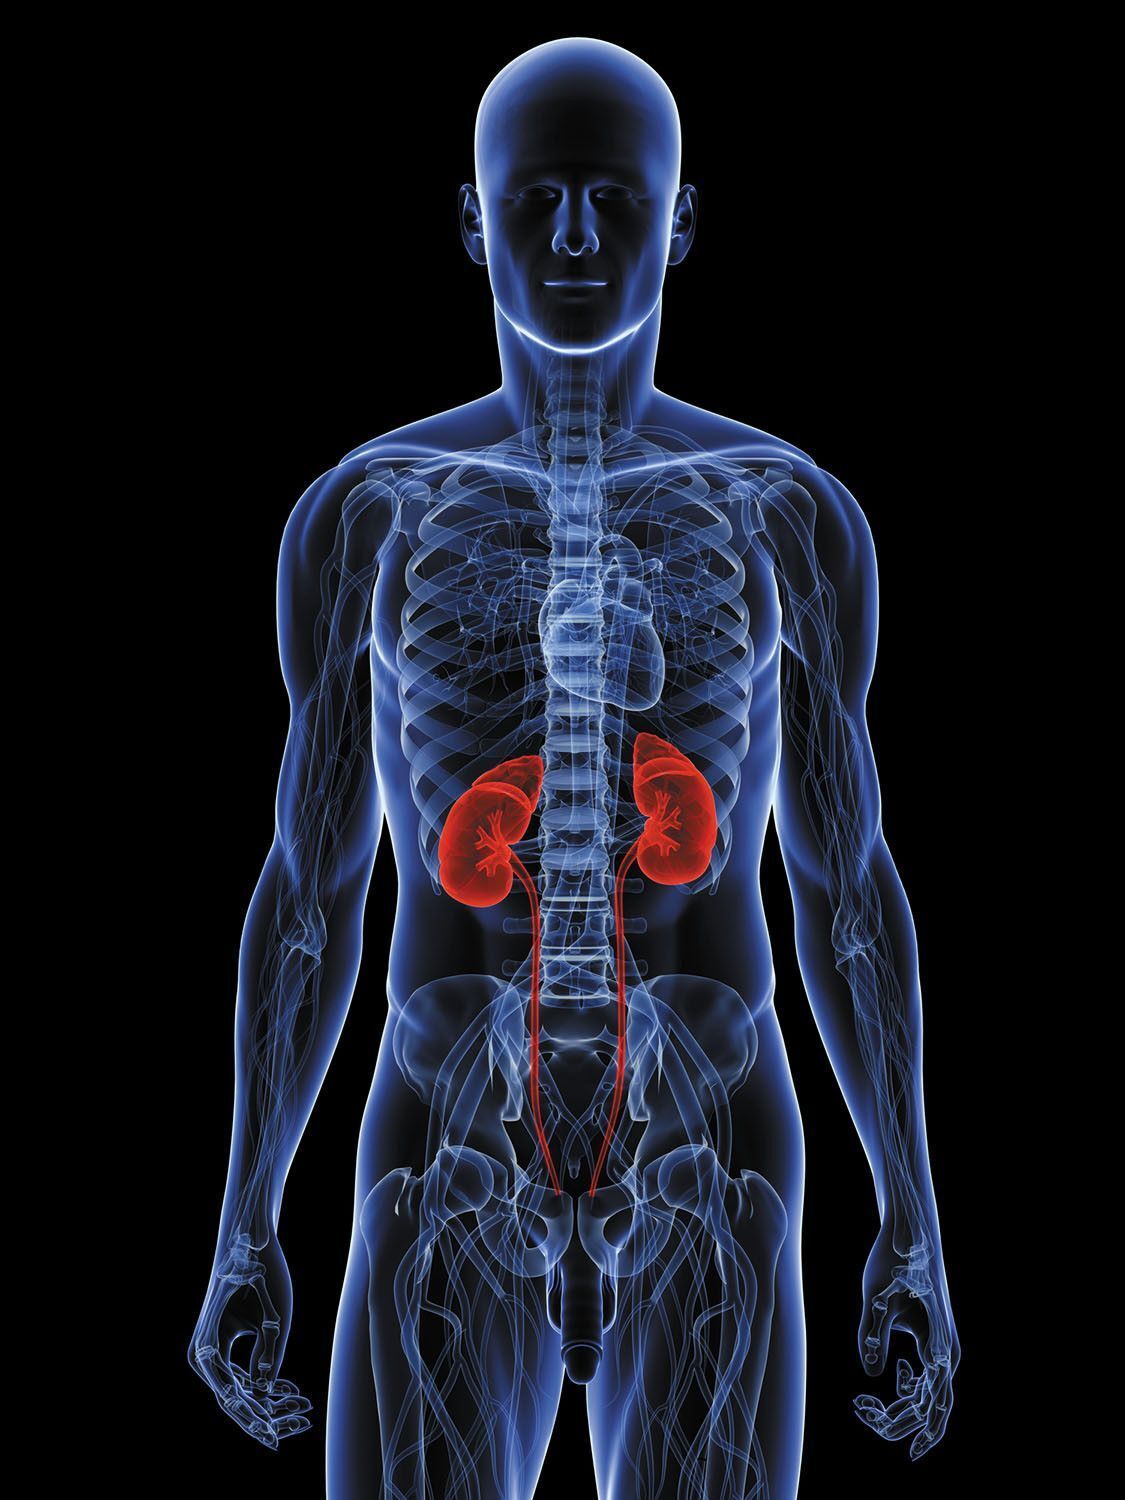 如果你疼痛的位置出现在图示的肾脏位置,那么要去看医生